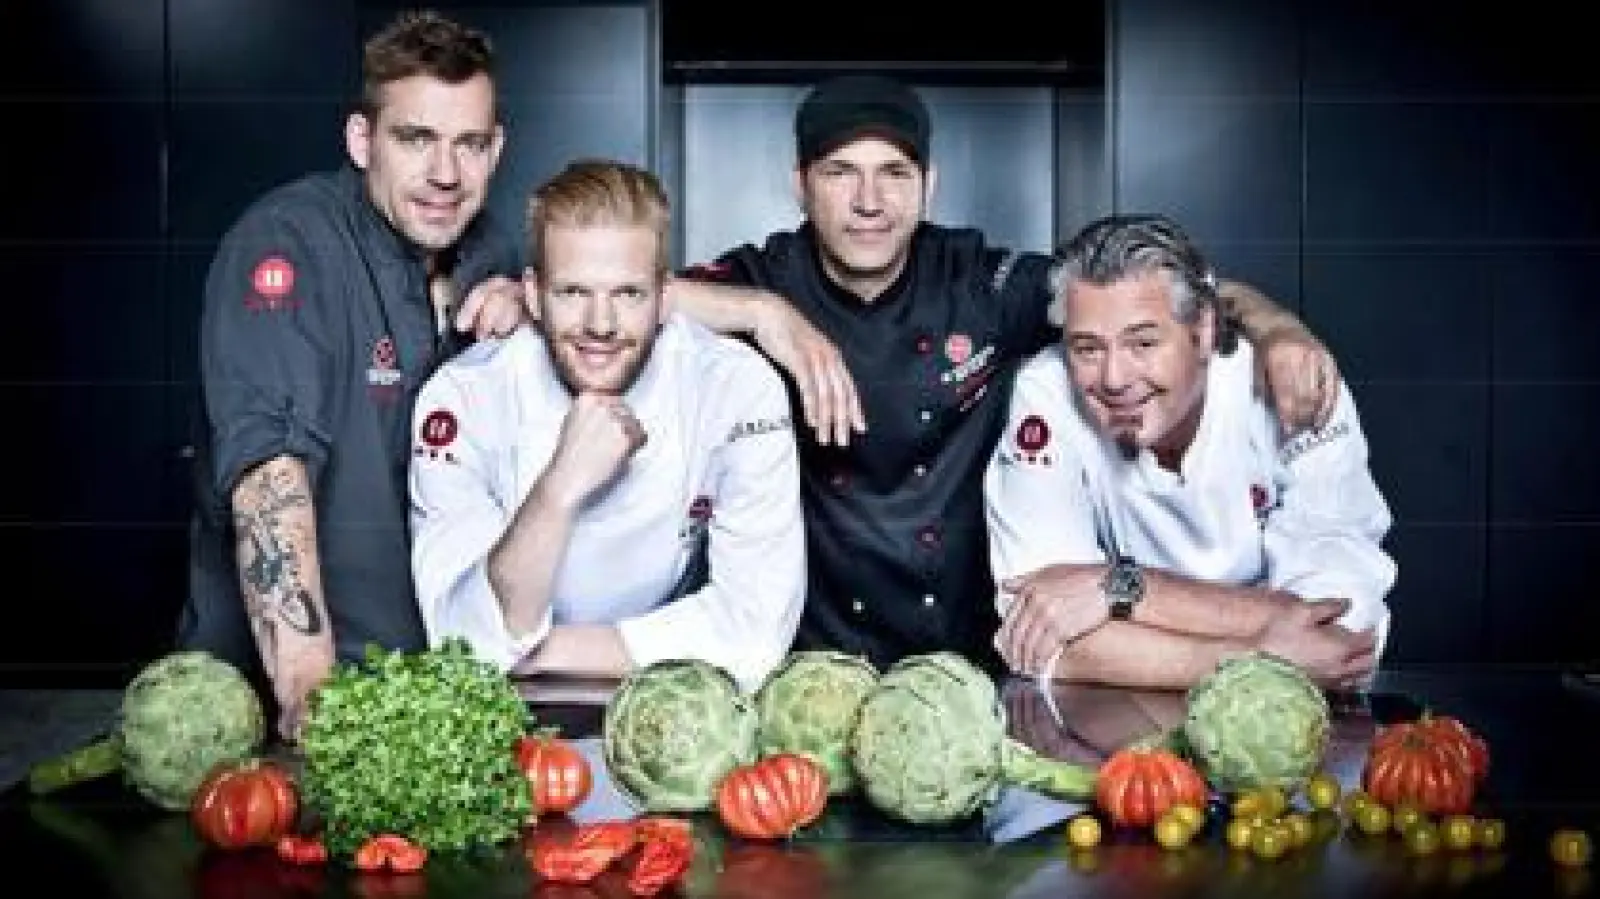 Die Kochprofis   Andreas Schweiger, Nils Egtermeyer, Ole Plogstedt und Frank Oehler (von links) kennen Fernsehschauer von RTL2. Jetzt kommen sie au ihrer kulinariscen Reise nach Aichach.